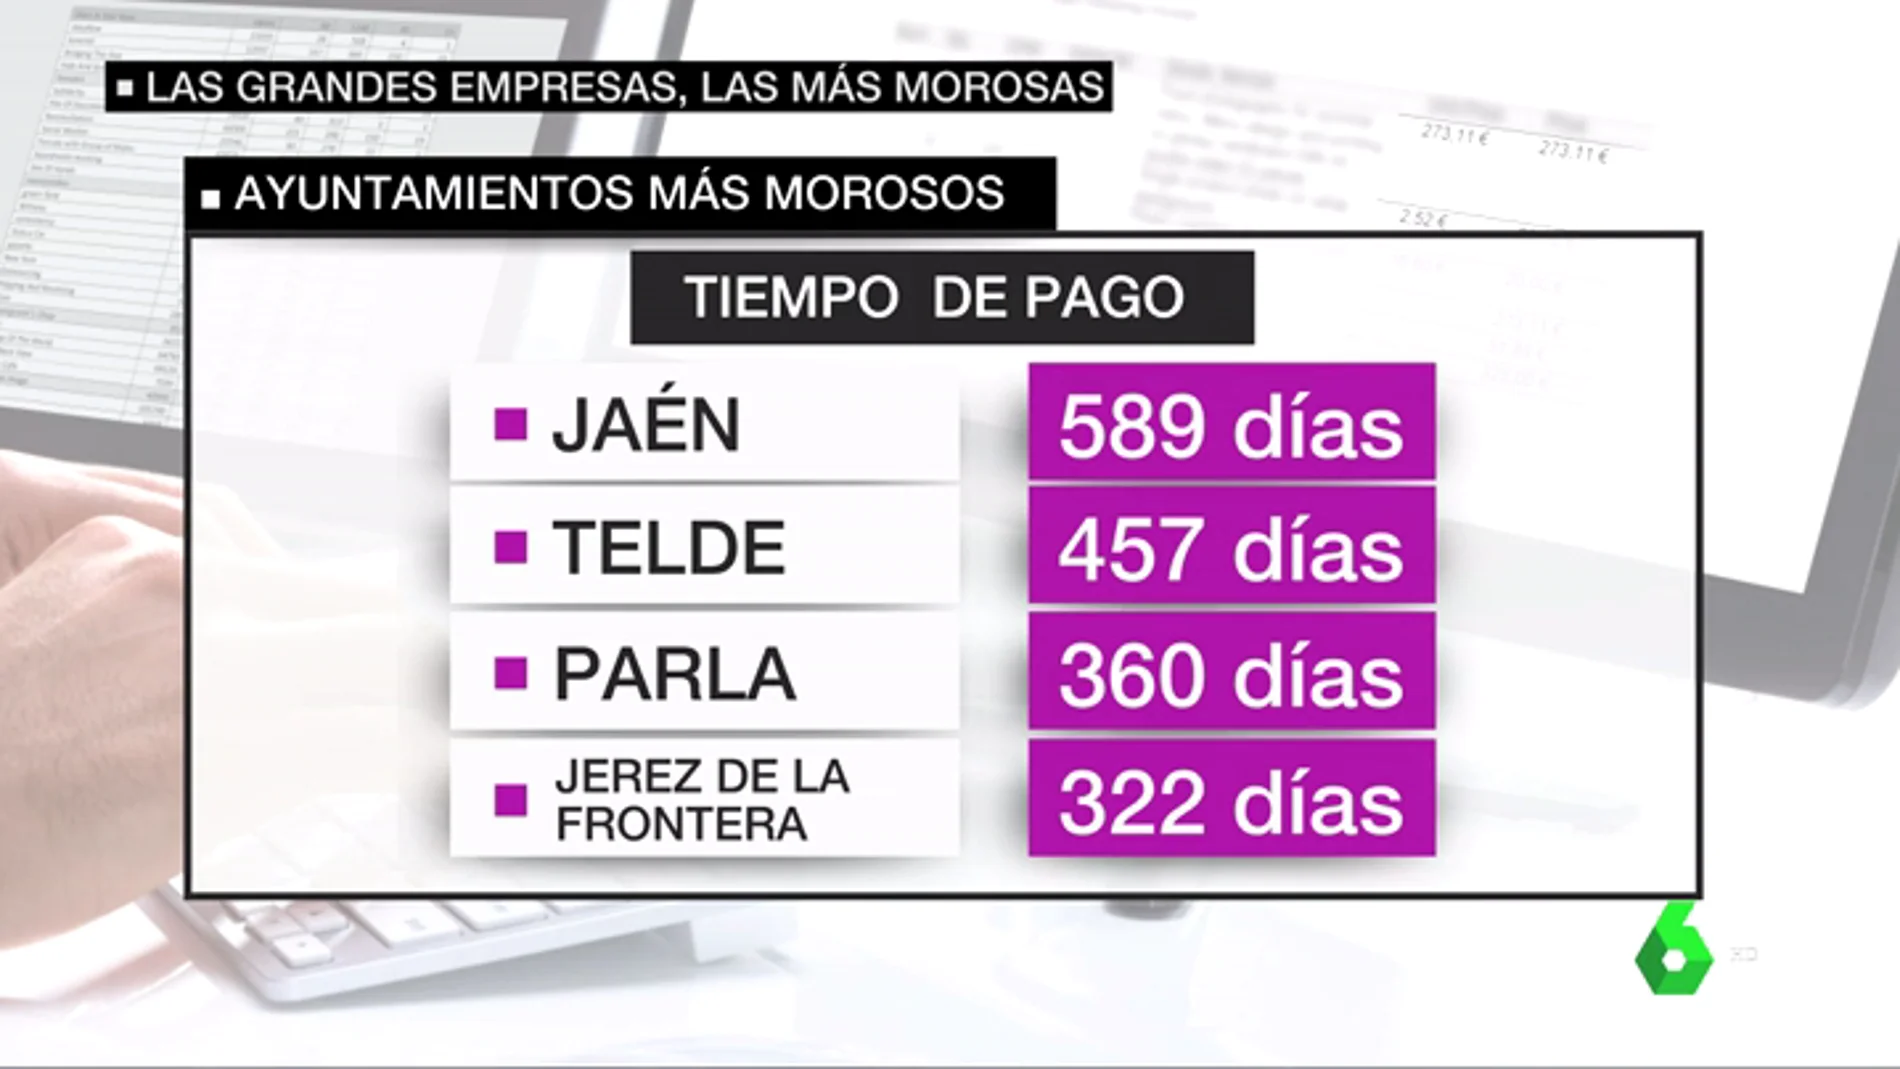 Los ayuntamientos y comunidades incumplen la ley sistemáticamente en los pagos a los autónomos: Jaén, Telde y Parla son los más morosos